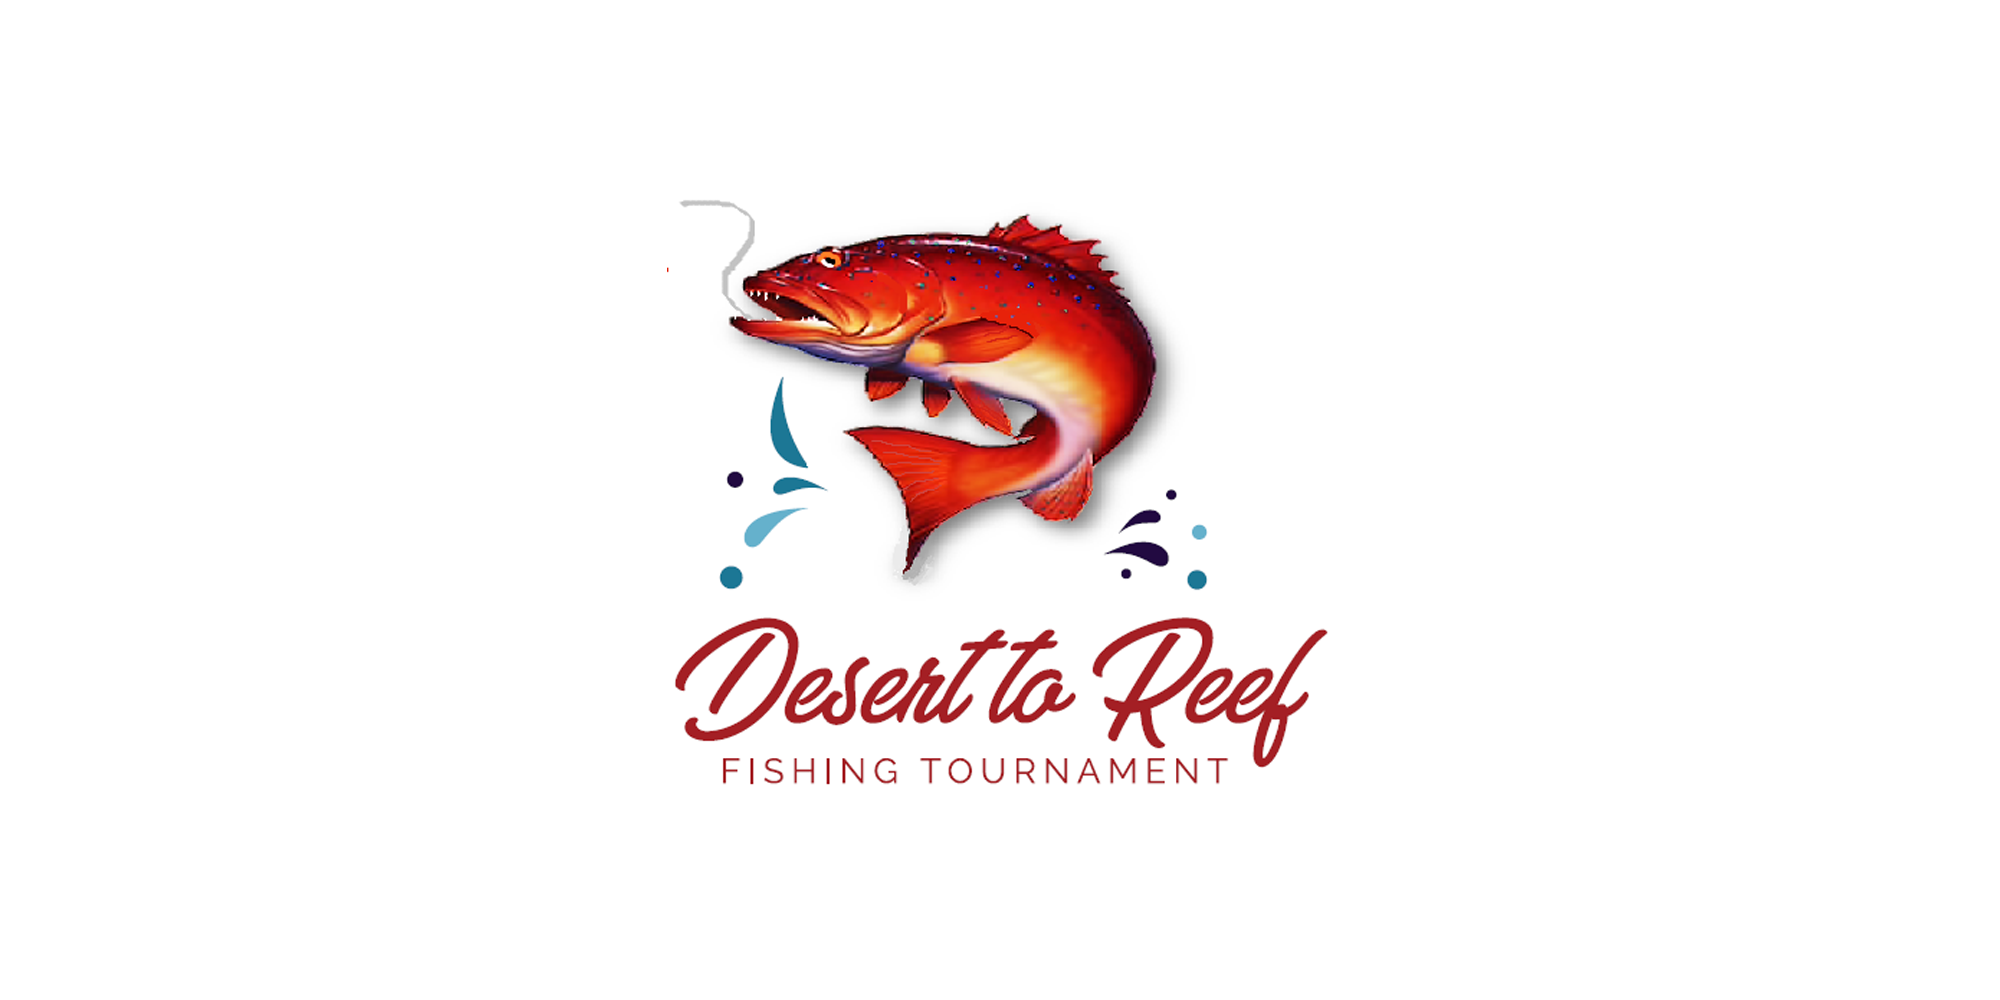 desert to reef logo 2.PNG